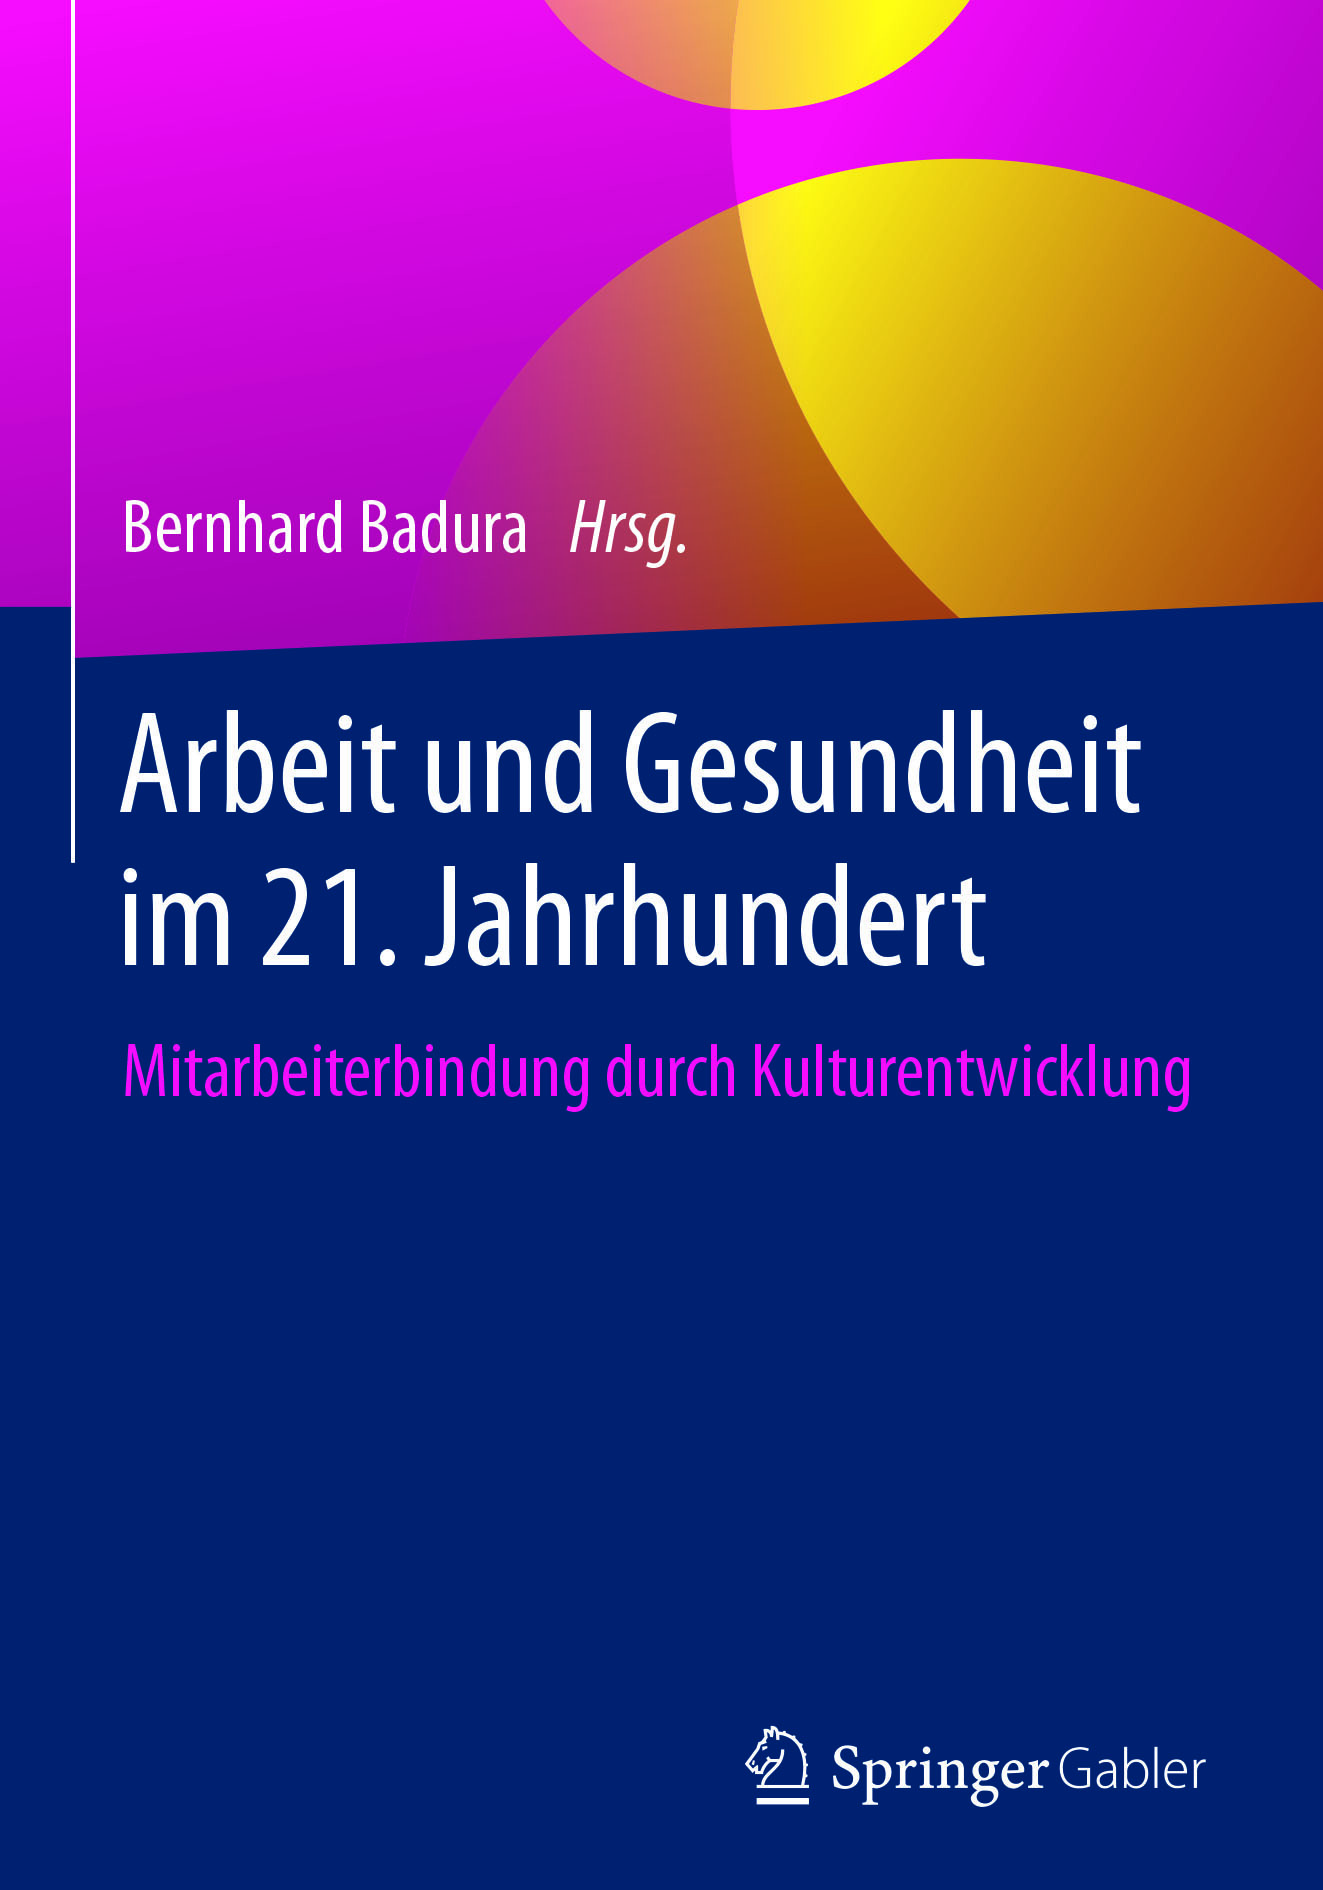 Badura, Bernhard - Arbeit und Gesundheit im 21. Jahrhundert, ebook